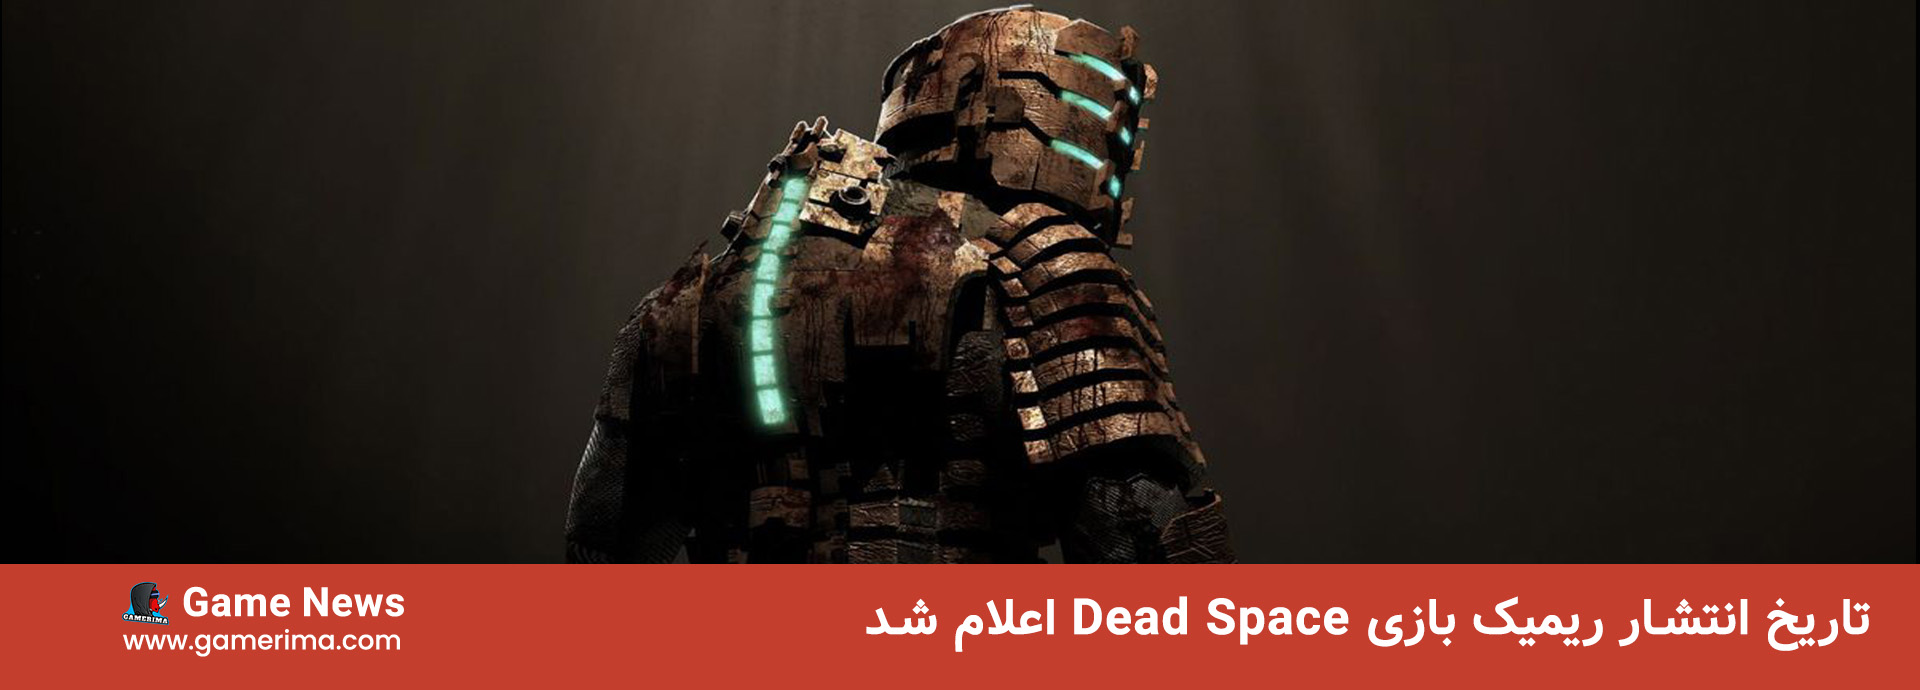 تاریخ انتشار ریمیک بازی Dead Space اعلام شد